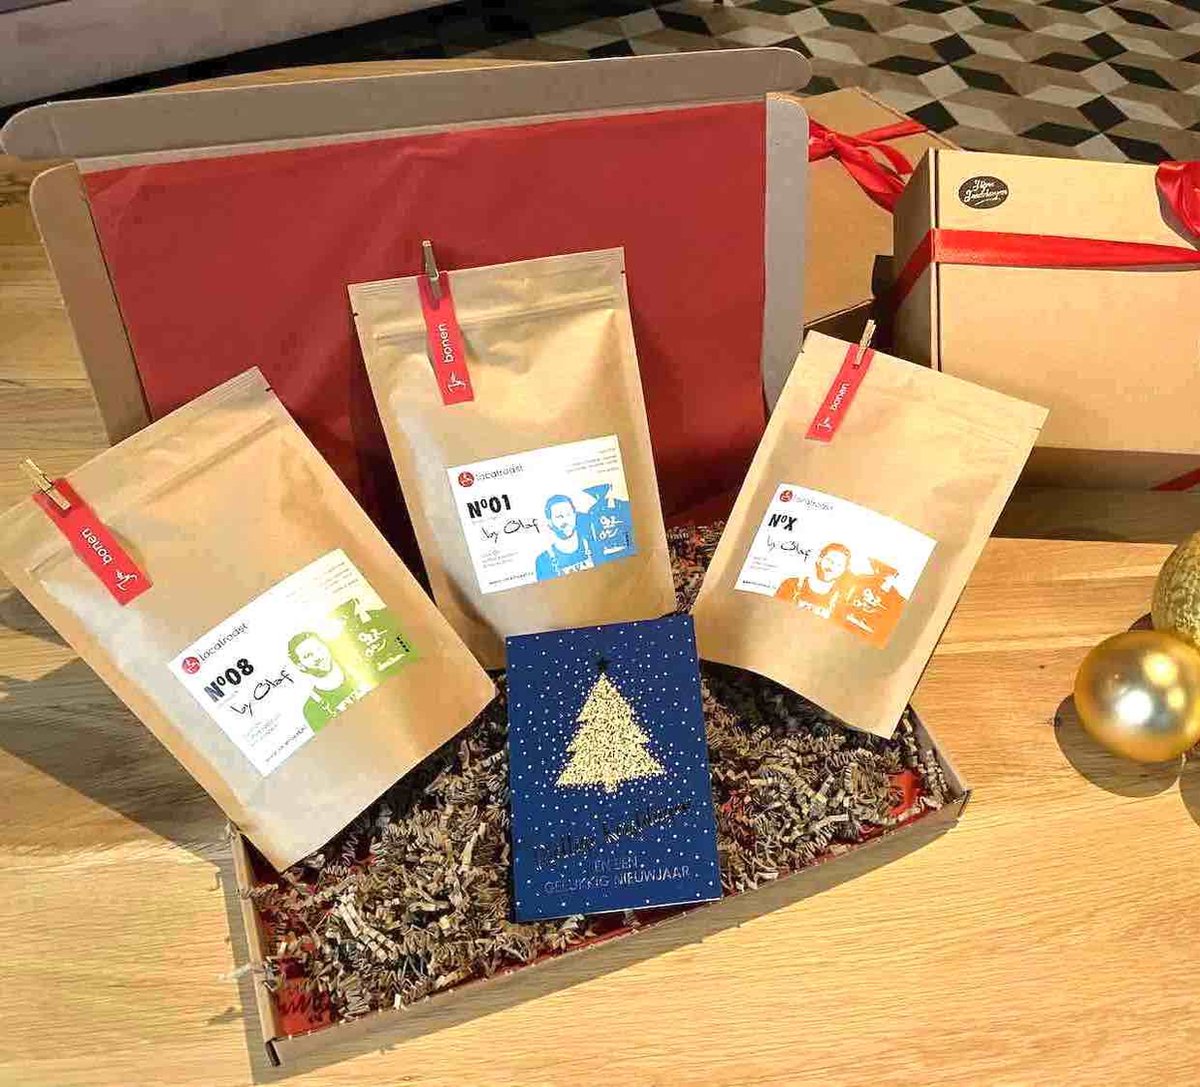 Localroast kerst koffie cadeau pakket met 3 x 200g vers gebrande koffies | gemalen | premium kwaliteit | mooi verpakt met lint en kerstkaart | koffie cadeaupakket | Kerstpakket